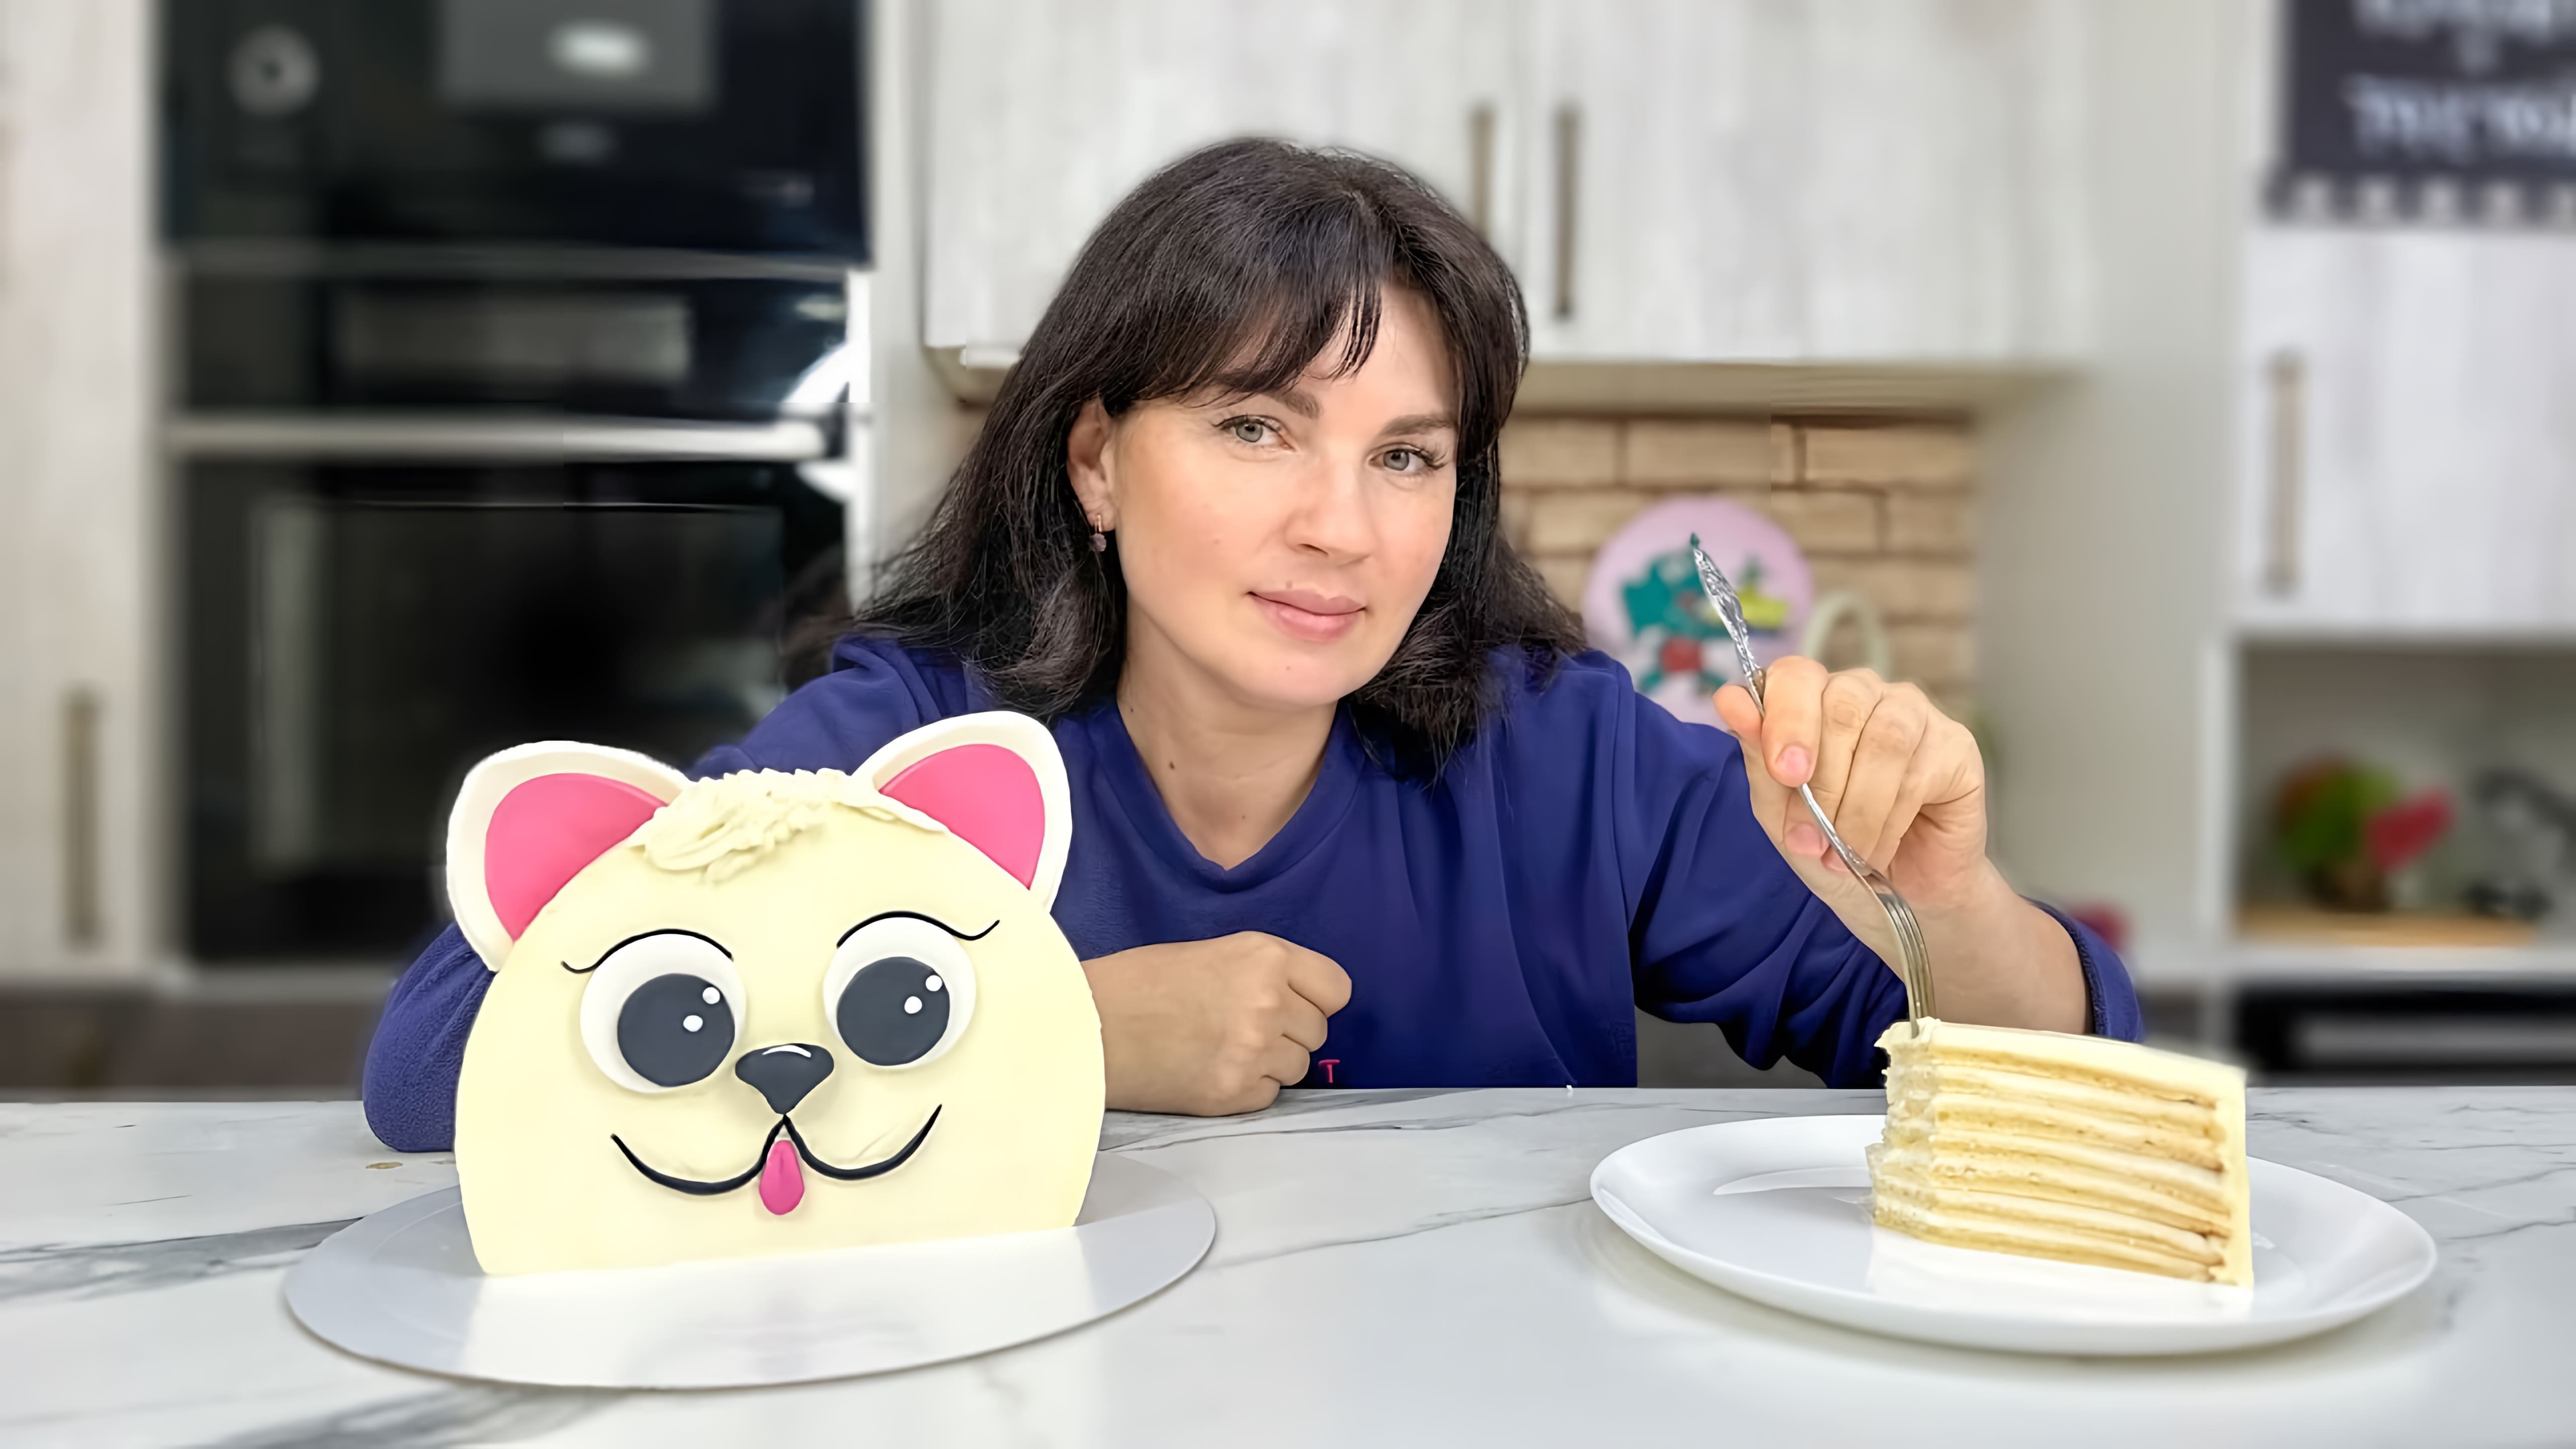 В этом видео демонстрируется процесс приготовления творожного йогуртового торта, который идеально подходит для детских праздников